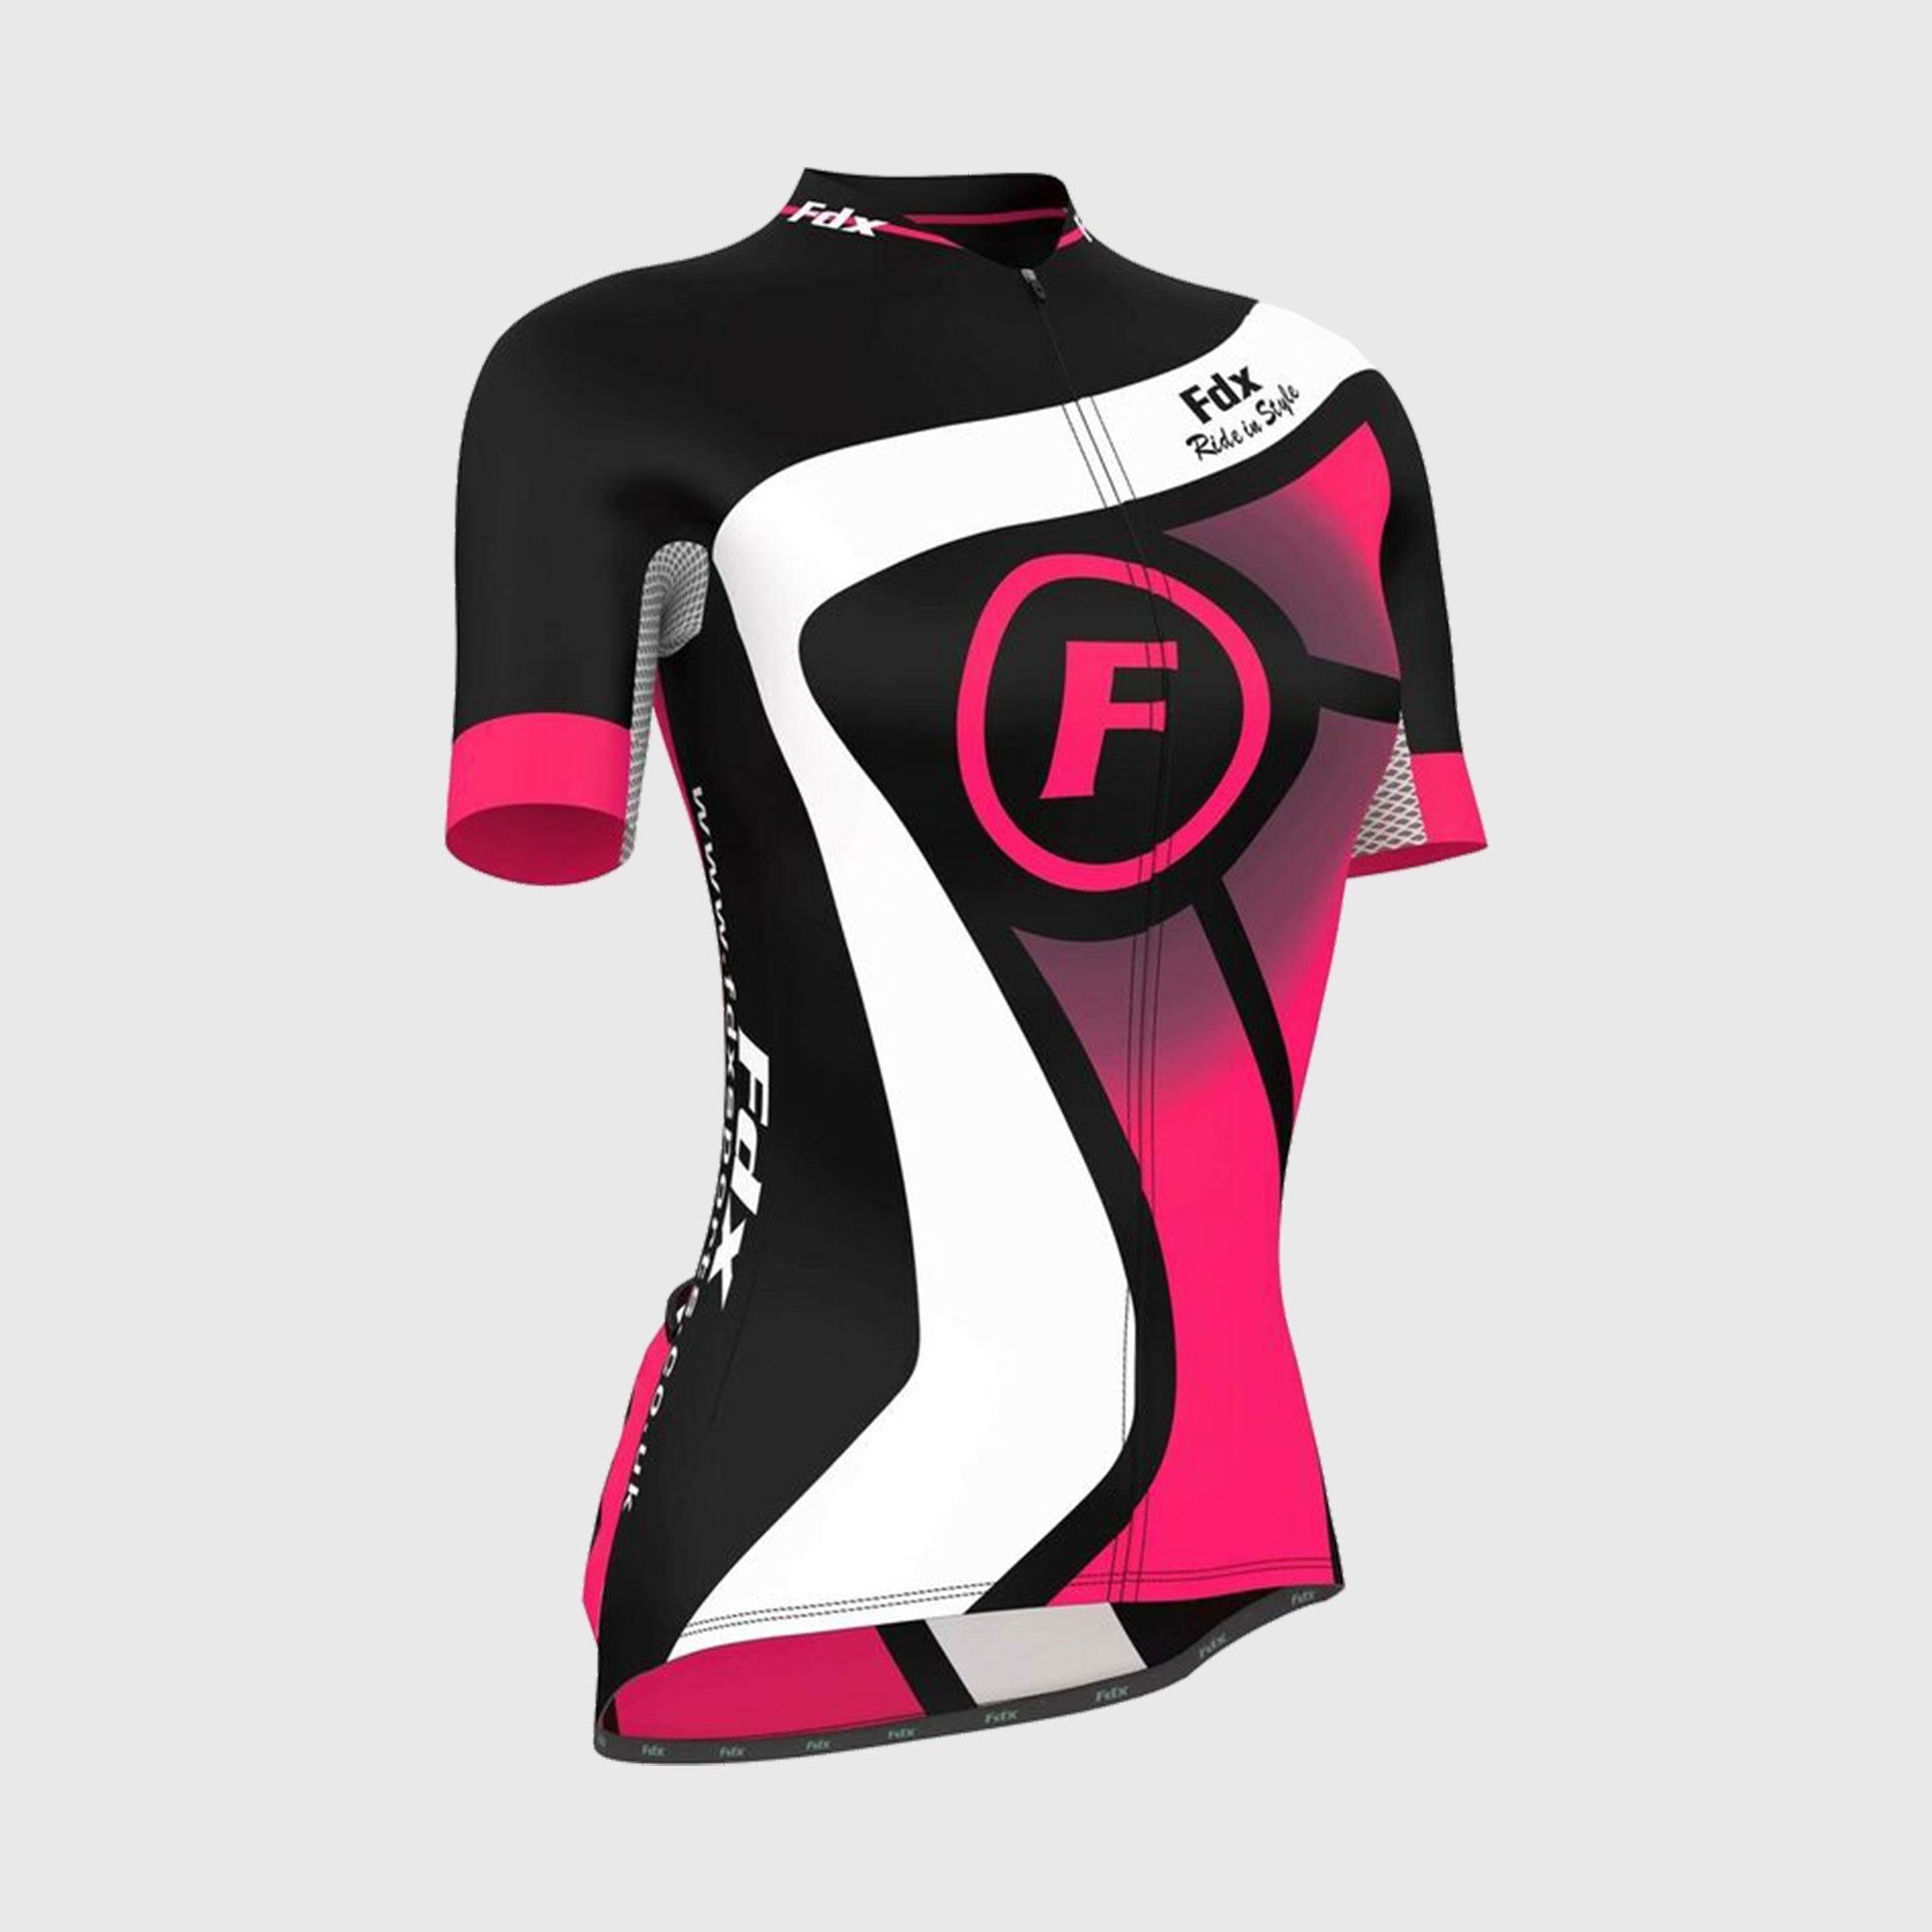 Fdx Signature Pink Women's Short Sleeve Summer Cycling Jersey